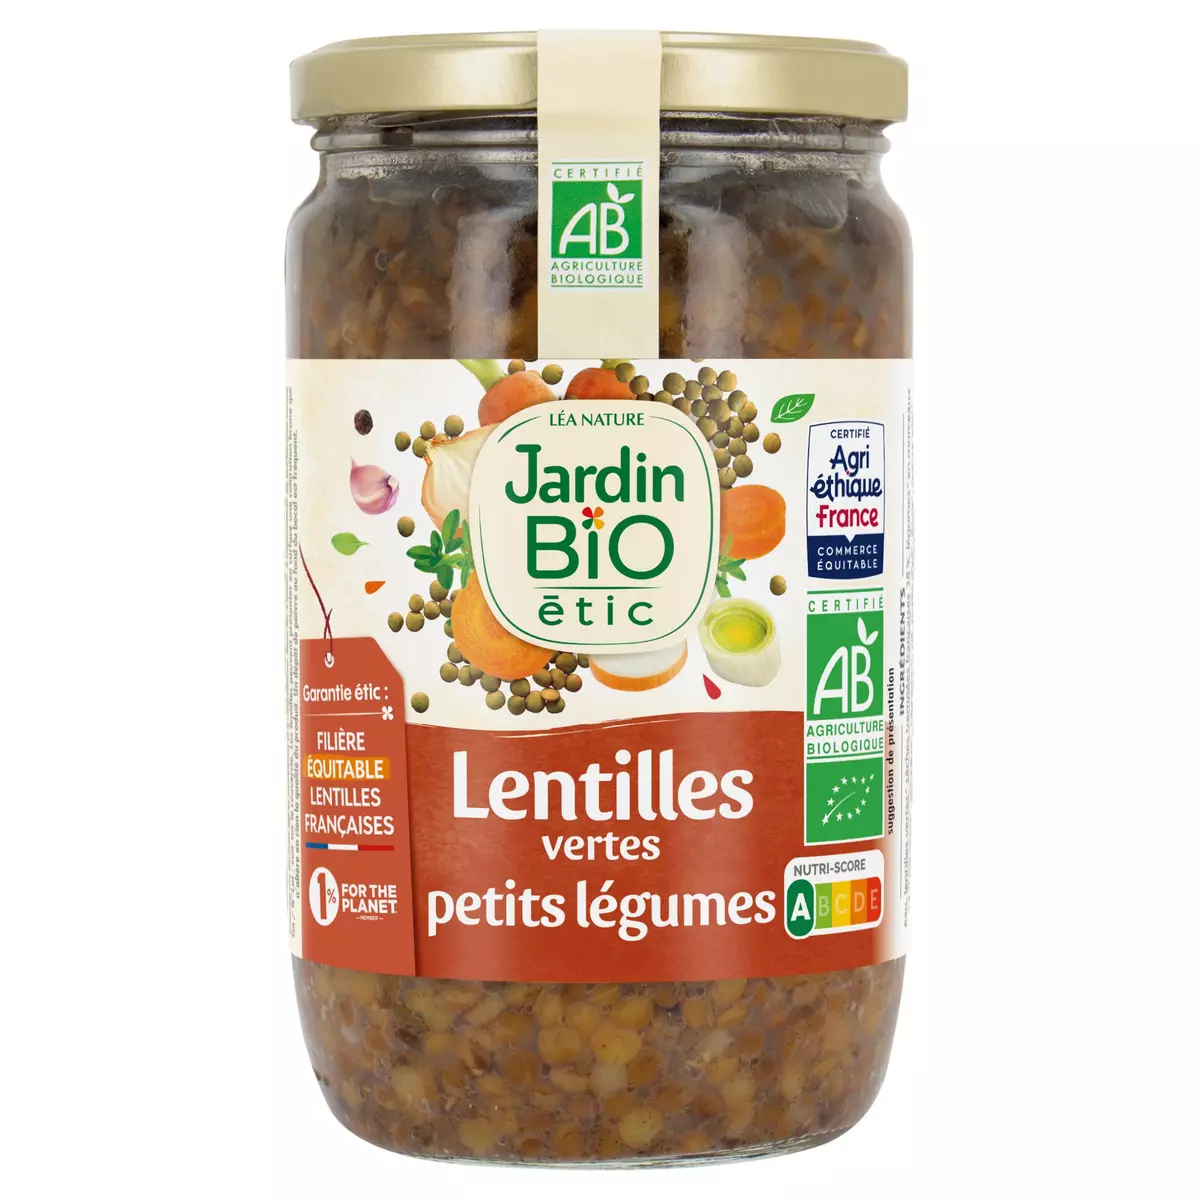 JARDIN BIO ETIC Lentilles vertes et petits légumes 660g